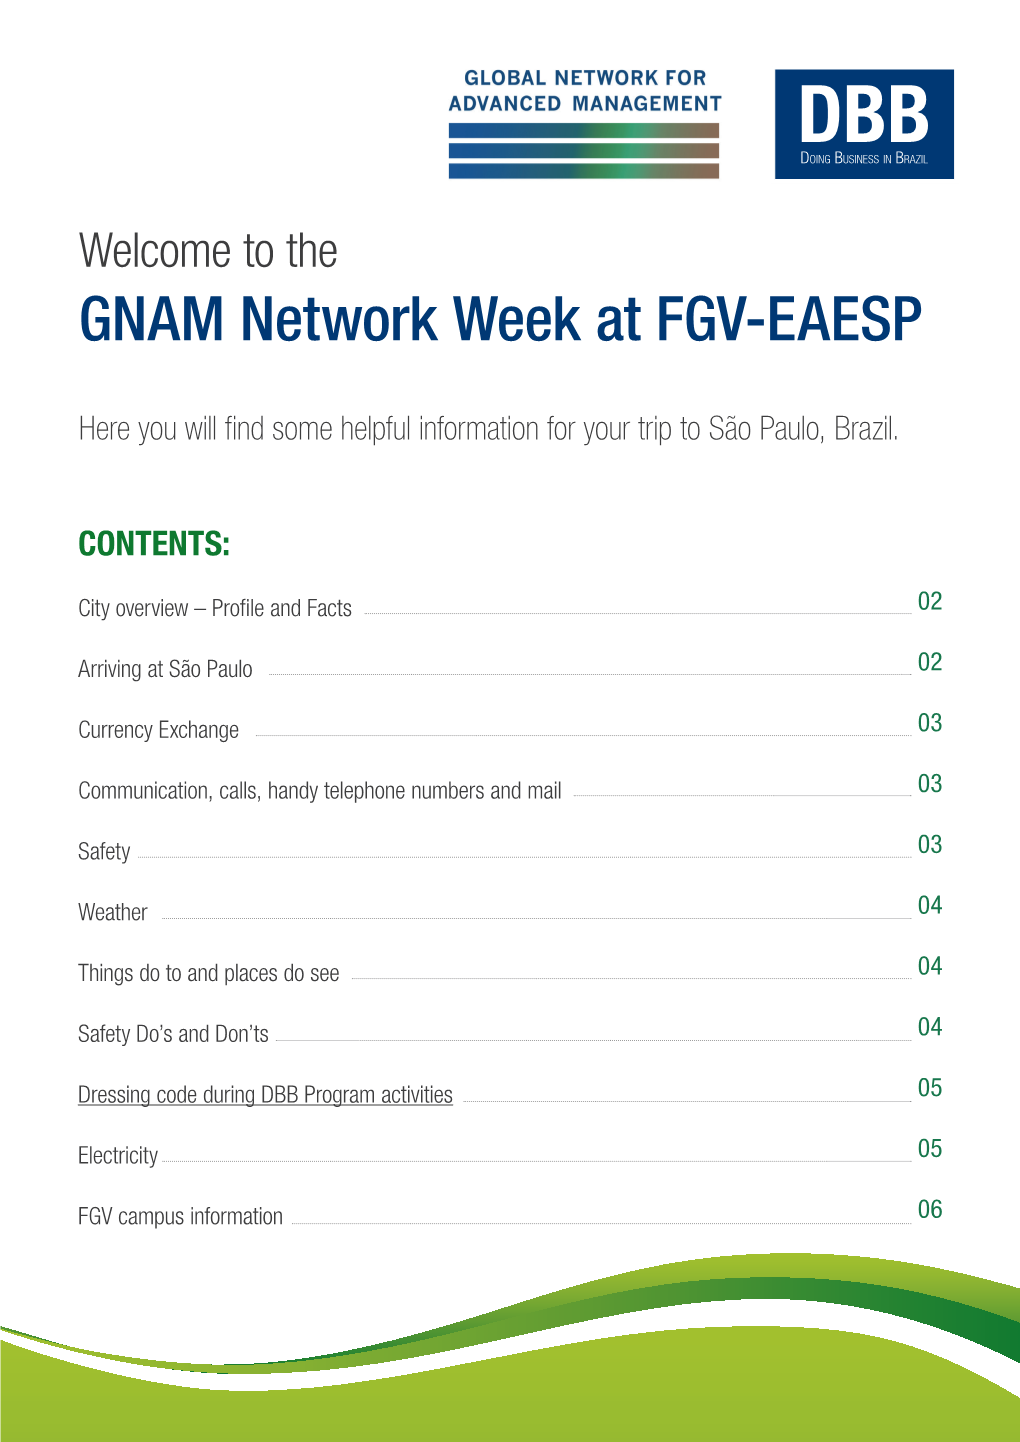 GNAM Network Week at FGV-EAESP